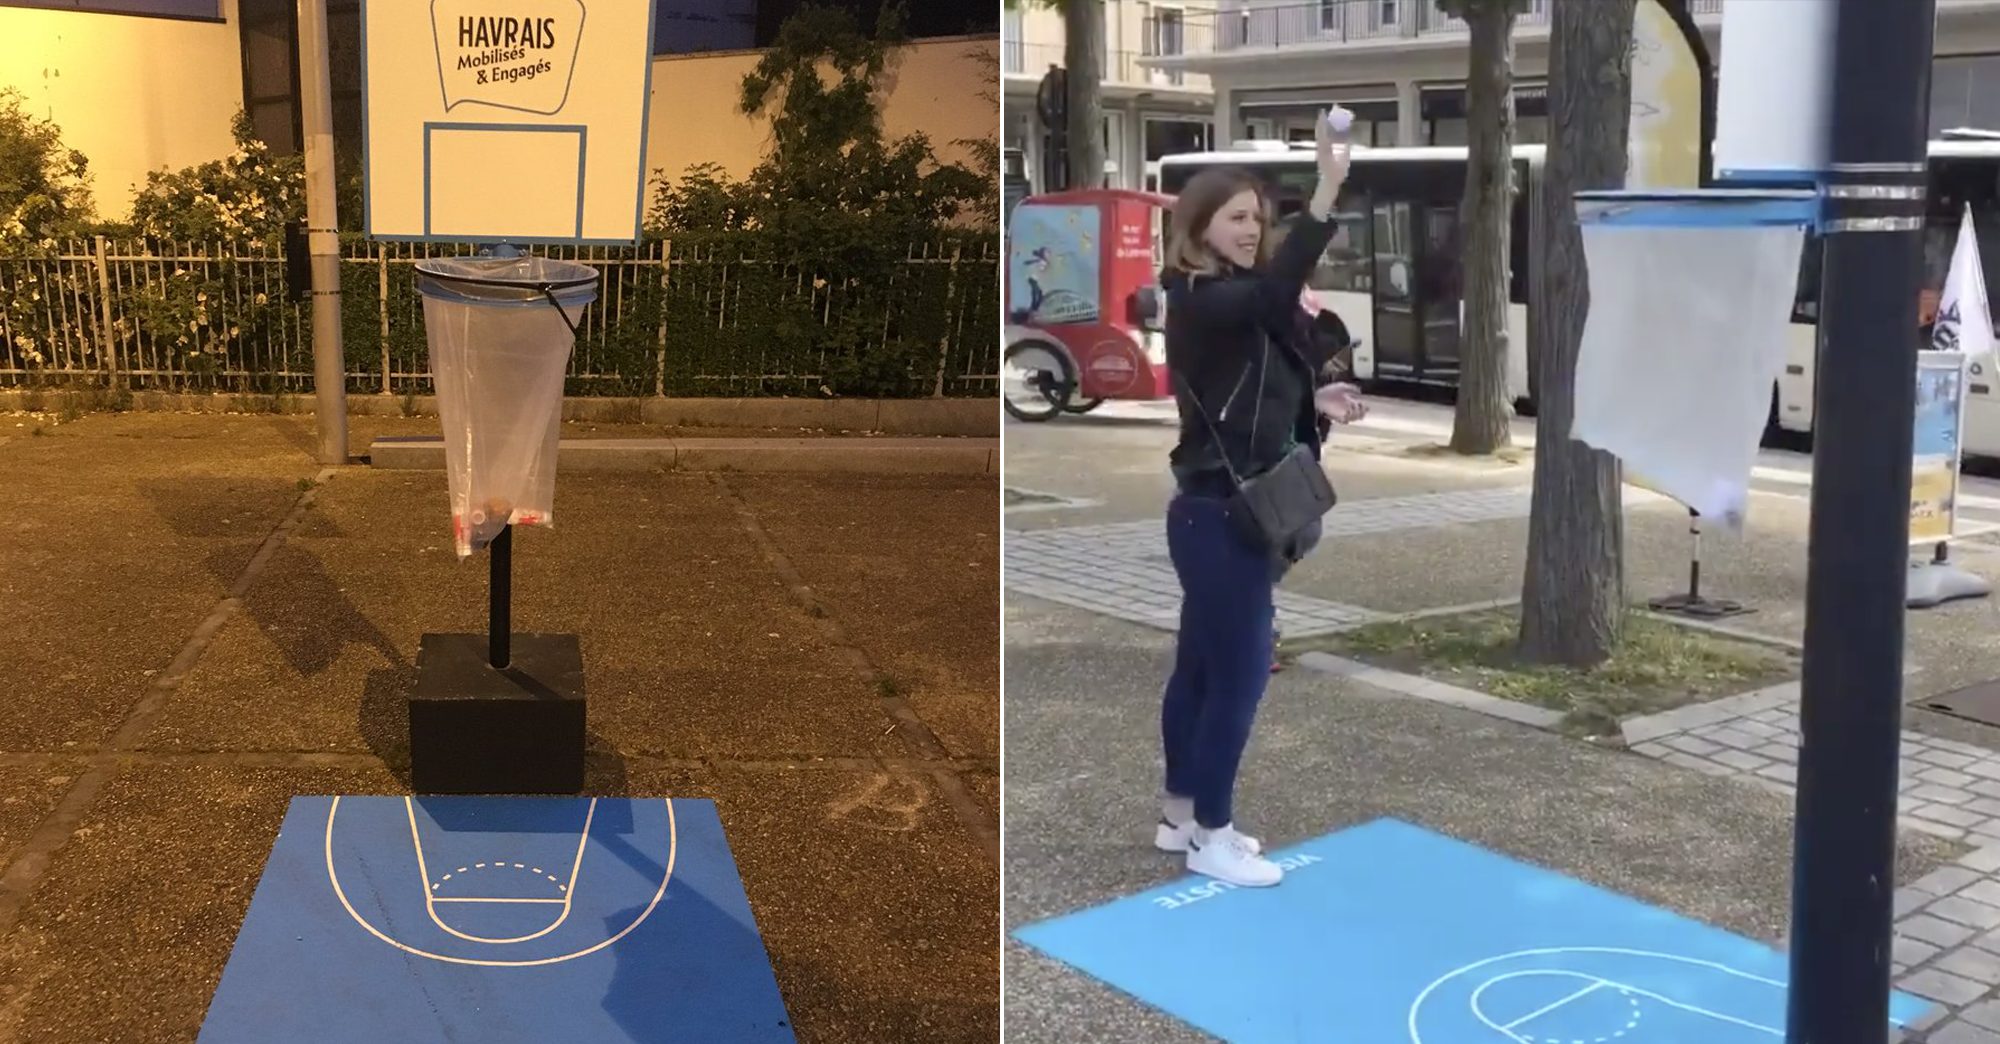 La ville du Havre transforme les poubelles en paniers de basket pour plus  de propreté et de fun